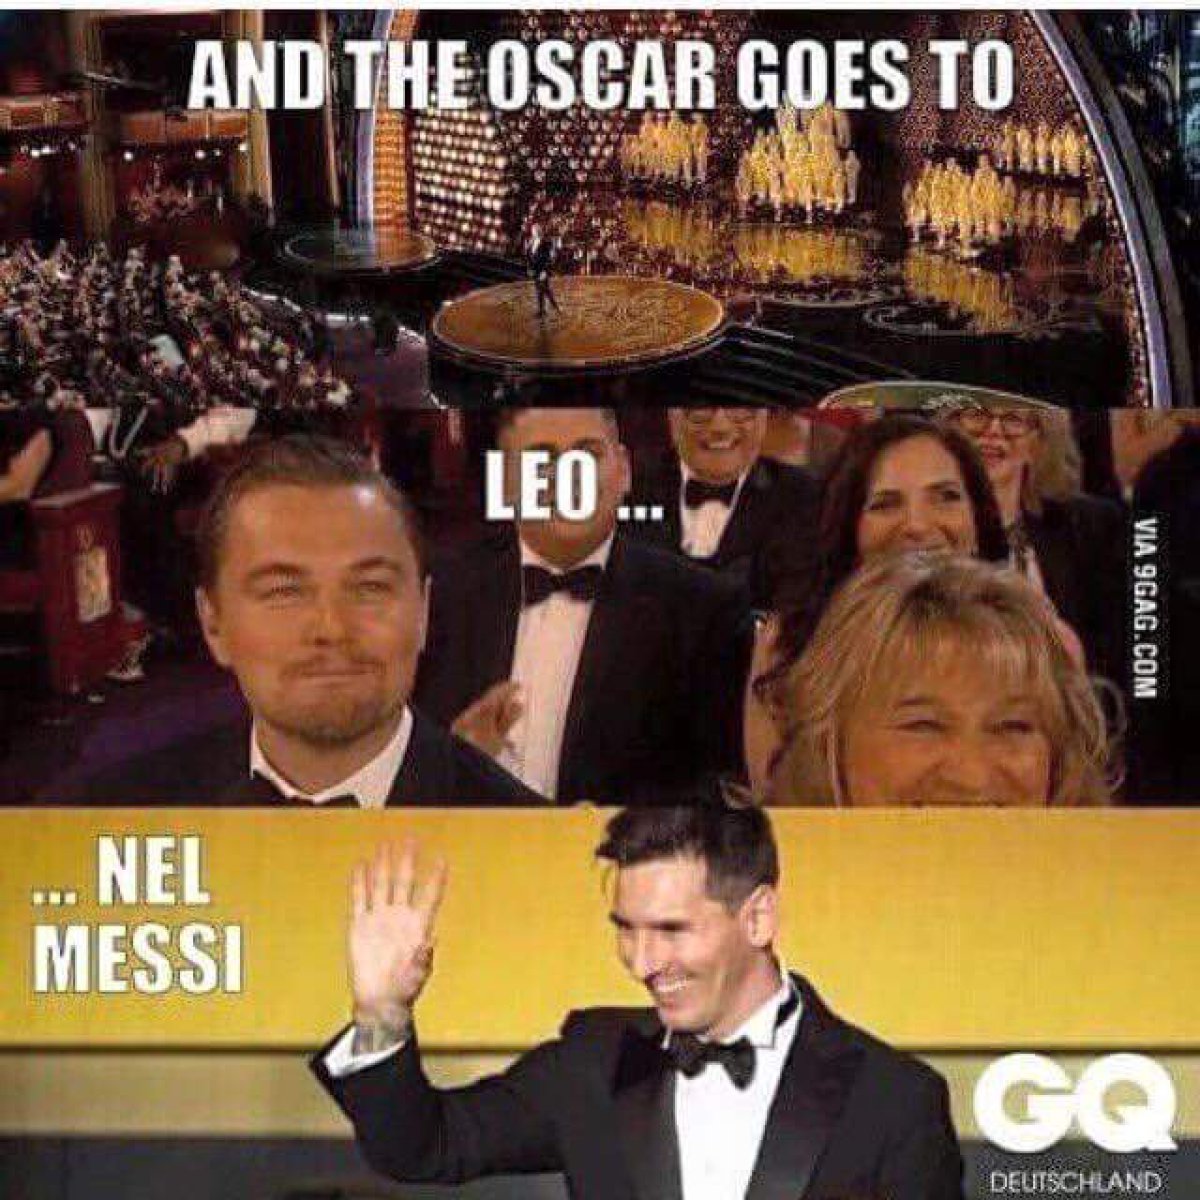 Memes Oscar 2016